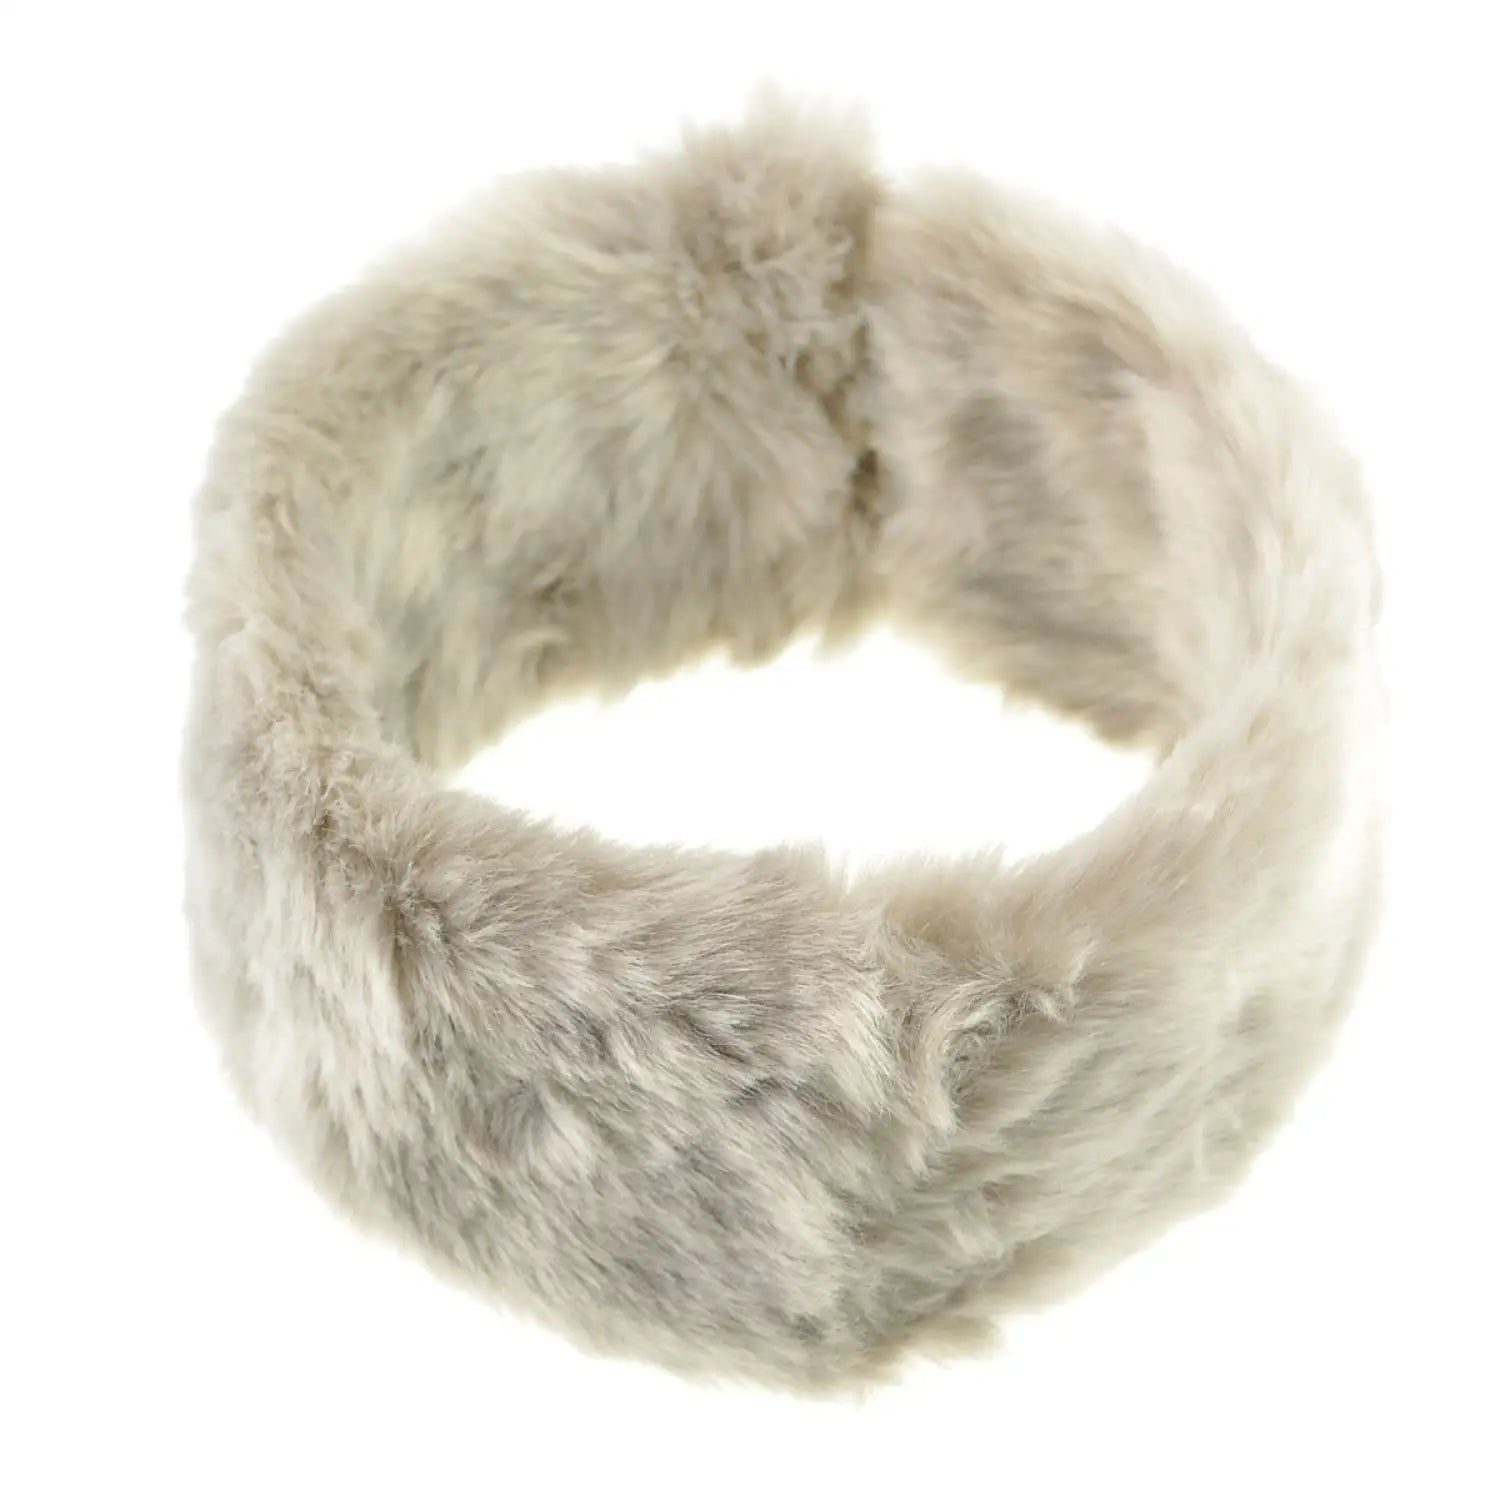 Soft faux fur collar on Faux Fur Stretchy Ear Warmer Headband.